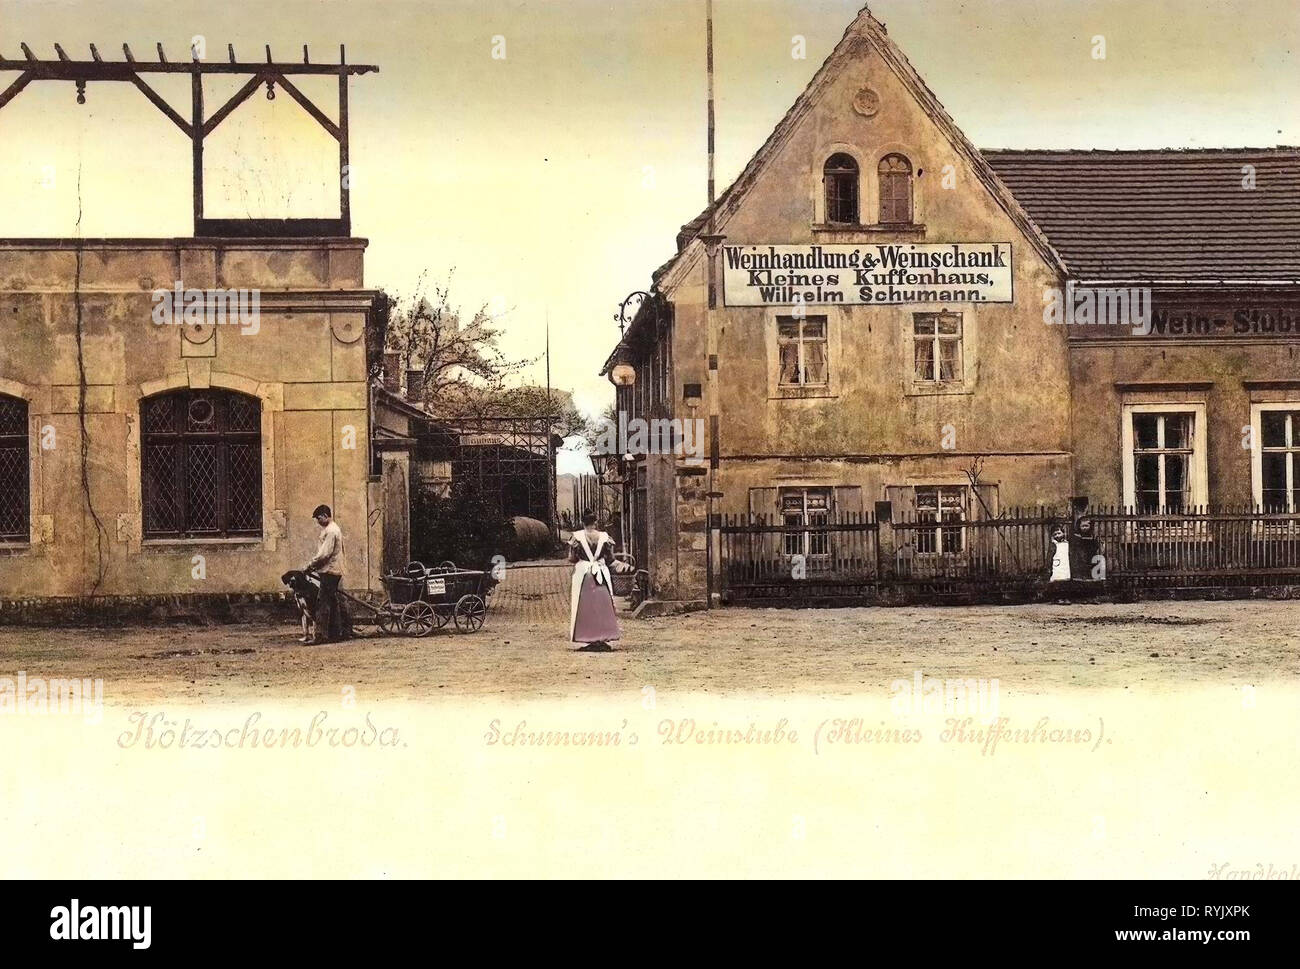 Kleines Kuffenhaus, Wine cellars in Germany, Dog carts, 1899, Landkreis Meißen, Kötzschenbroda, Schumanns Weinstube (Kleines Kuffenhaus Stock Photo